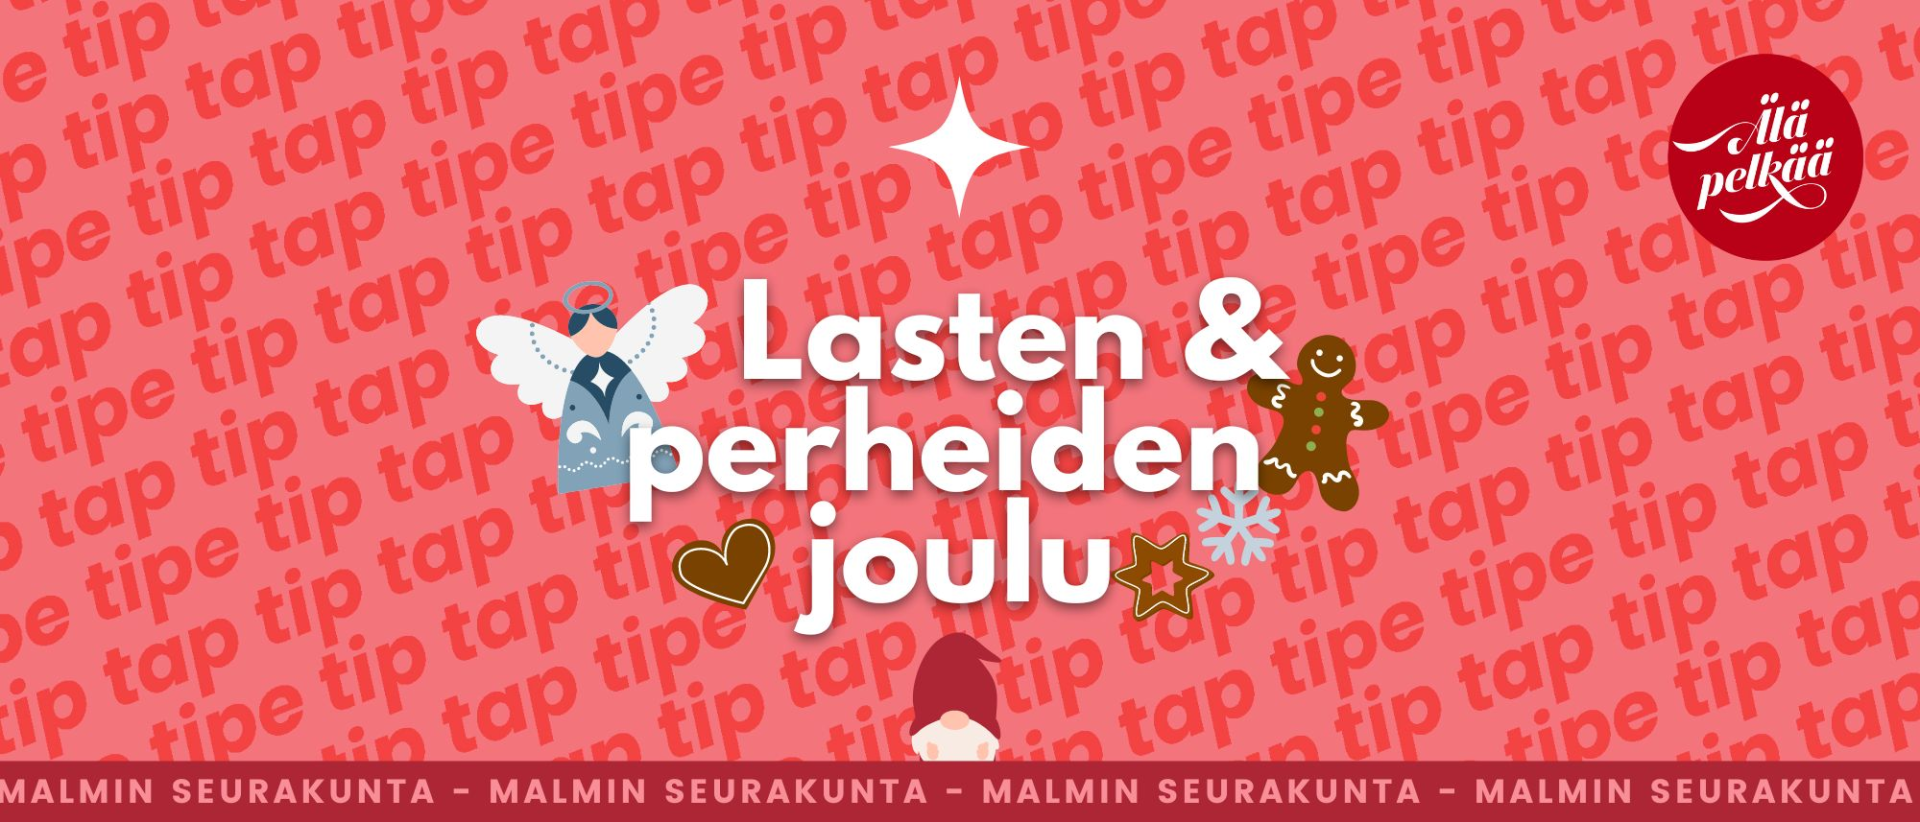 Lasten & perheiden joulu Malmin seurakunta tip tap-tekstitaustaa vasten